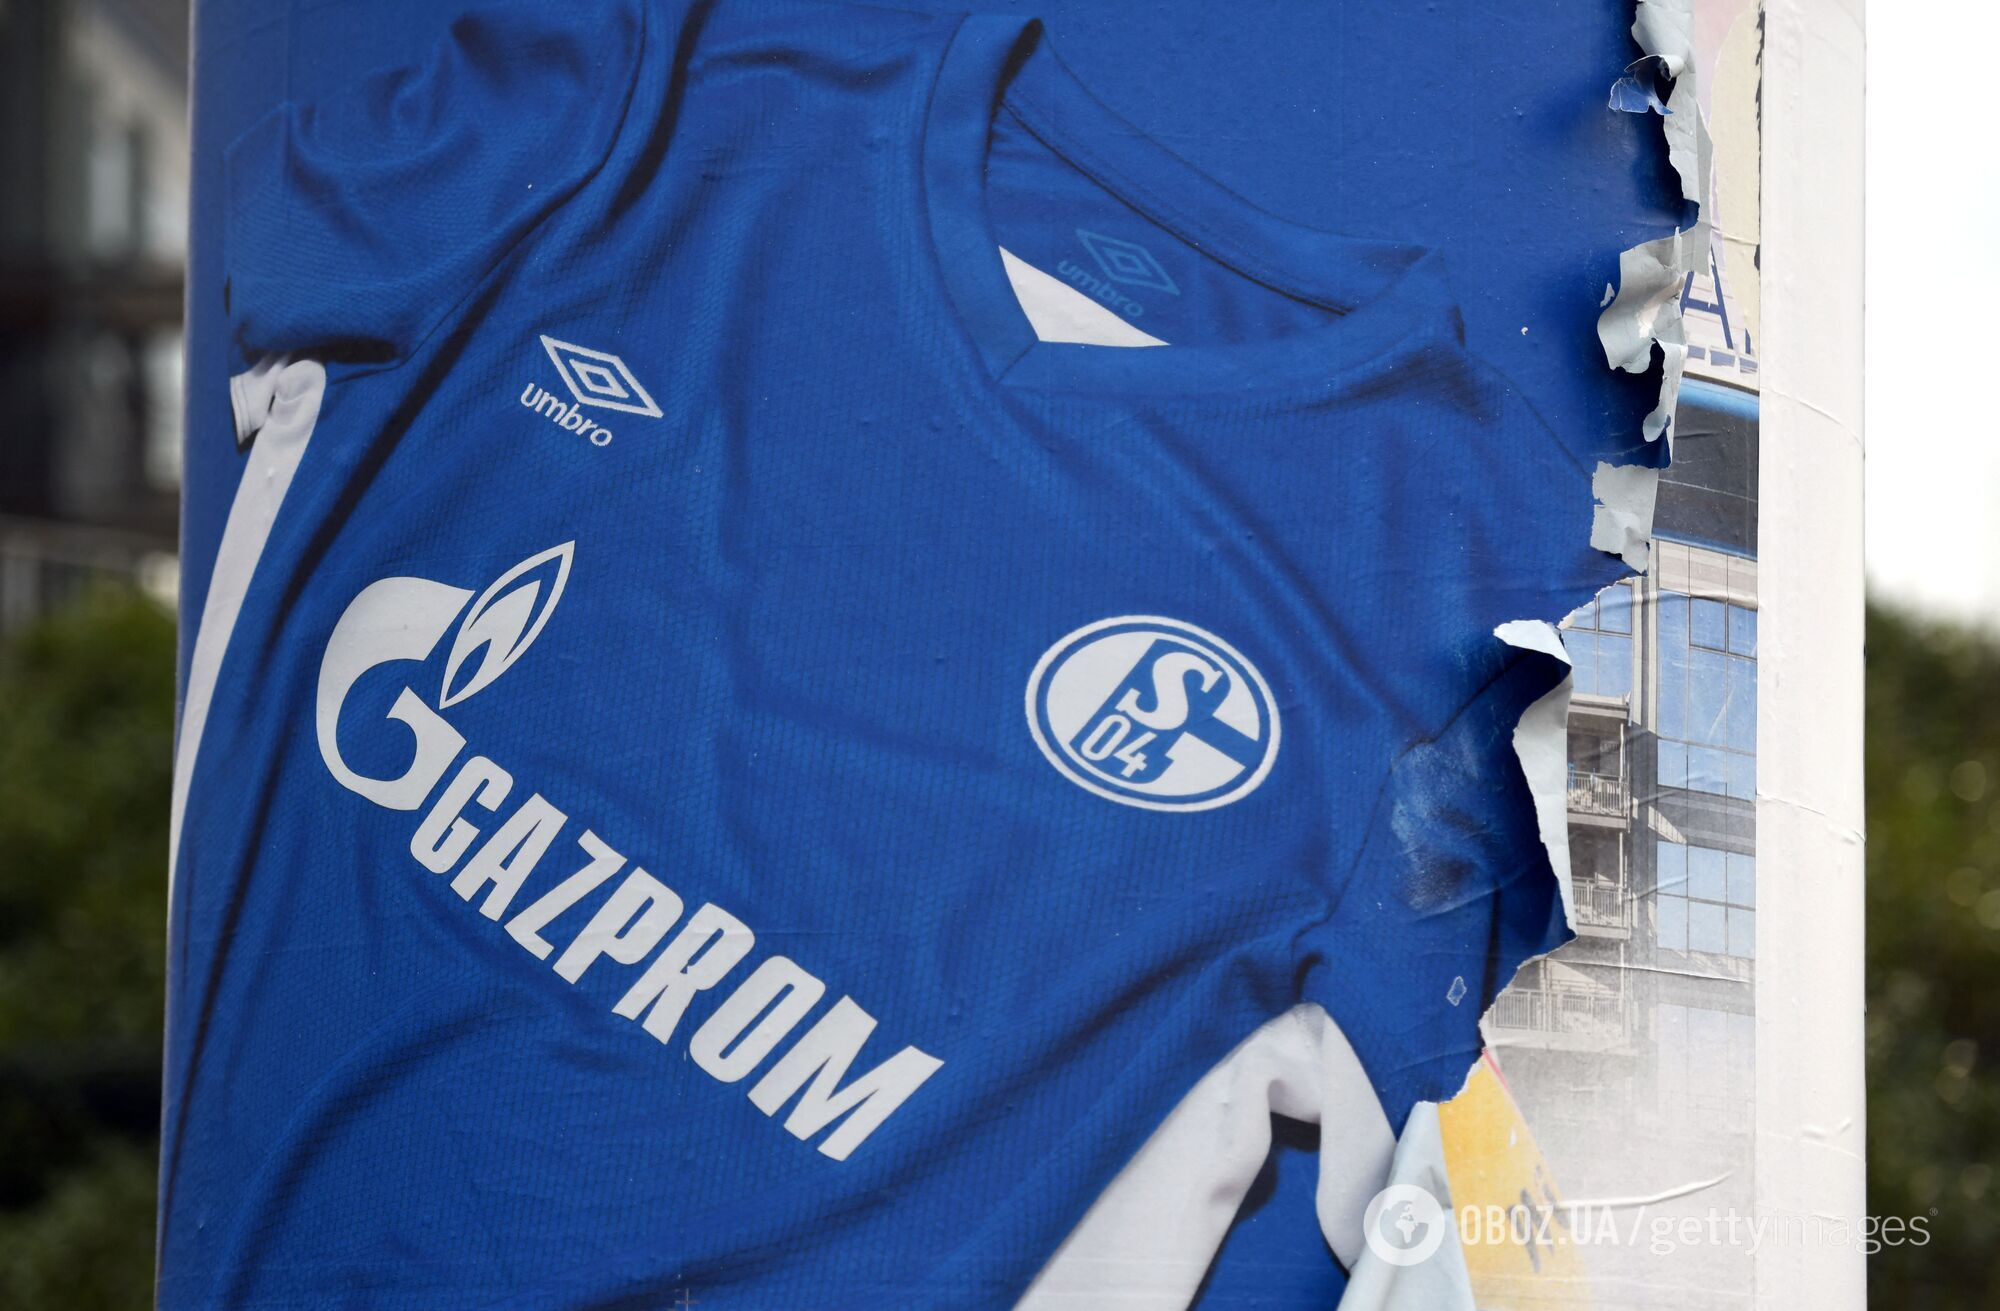 Газпром уже исчез с футболок "Шальке"